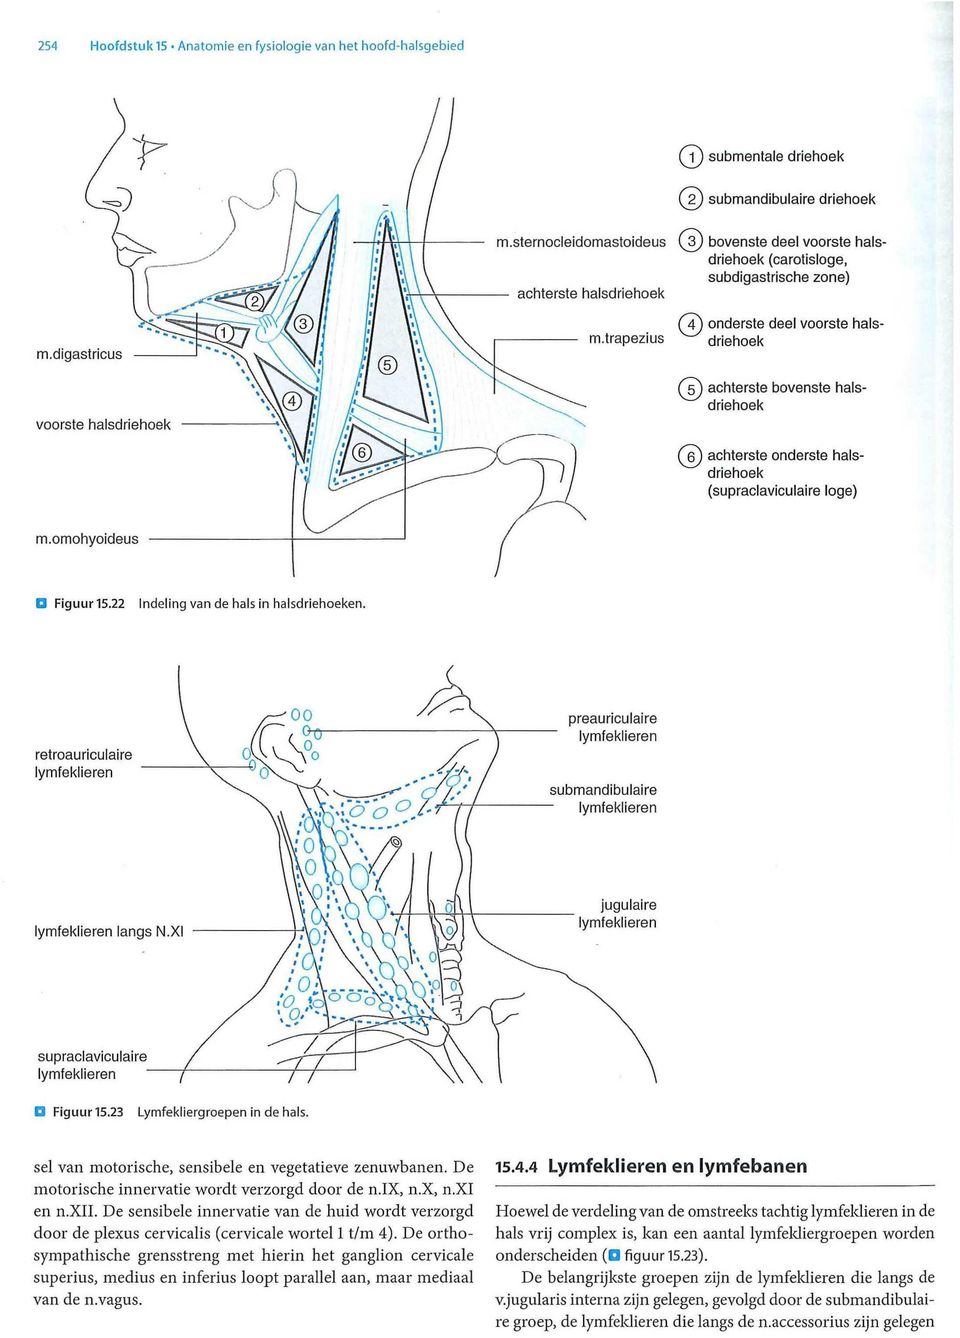 Figuur 15.23 in de hals. van motorische, sensibele en vegetatieve zenuwbanen. De motorische innervatie wordt verzorgd door de n.ix, n.x, n.xi en n.xii.